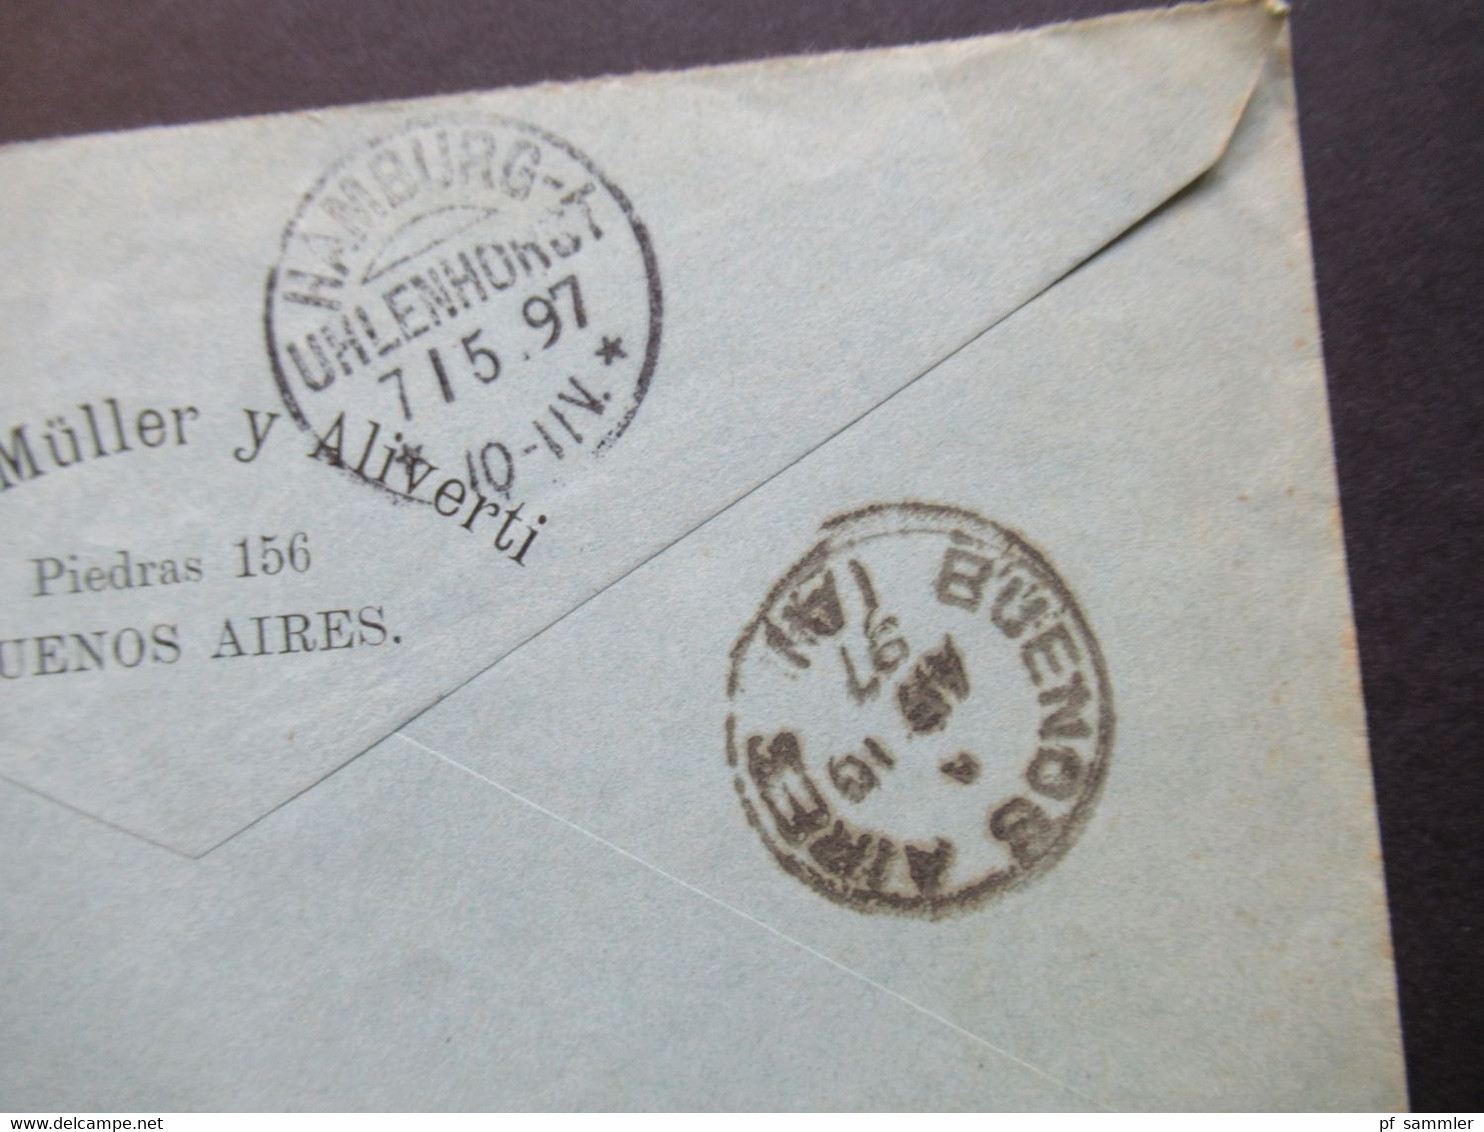 Argentinien 1897 Por Vapor Nile Nach HH Mit KOS Hamburg Uhlenhorst Umschlag Adolfo Müller Y Aliverti Buenos Aires - Lettres & Documents